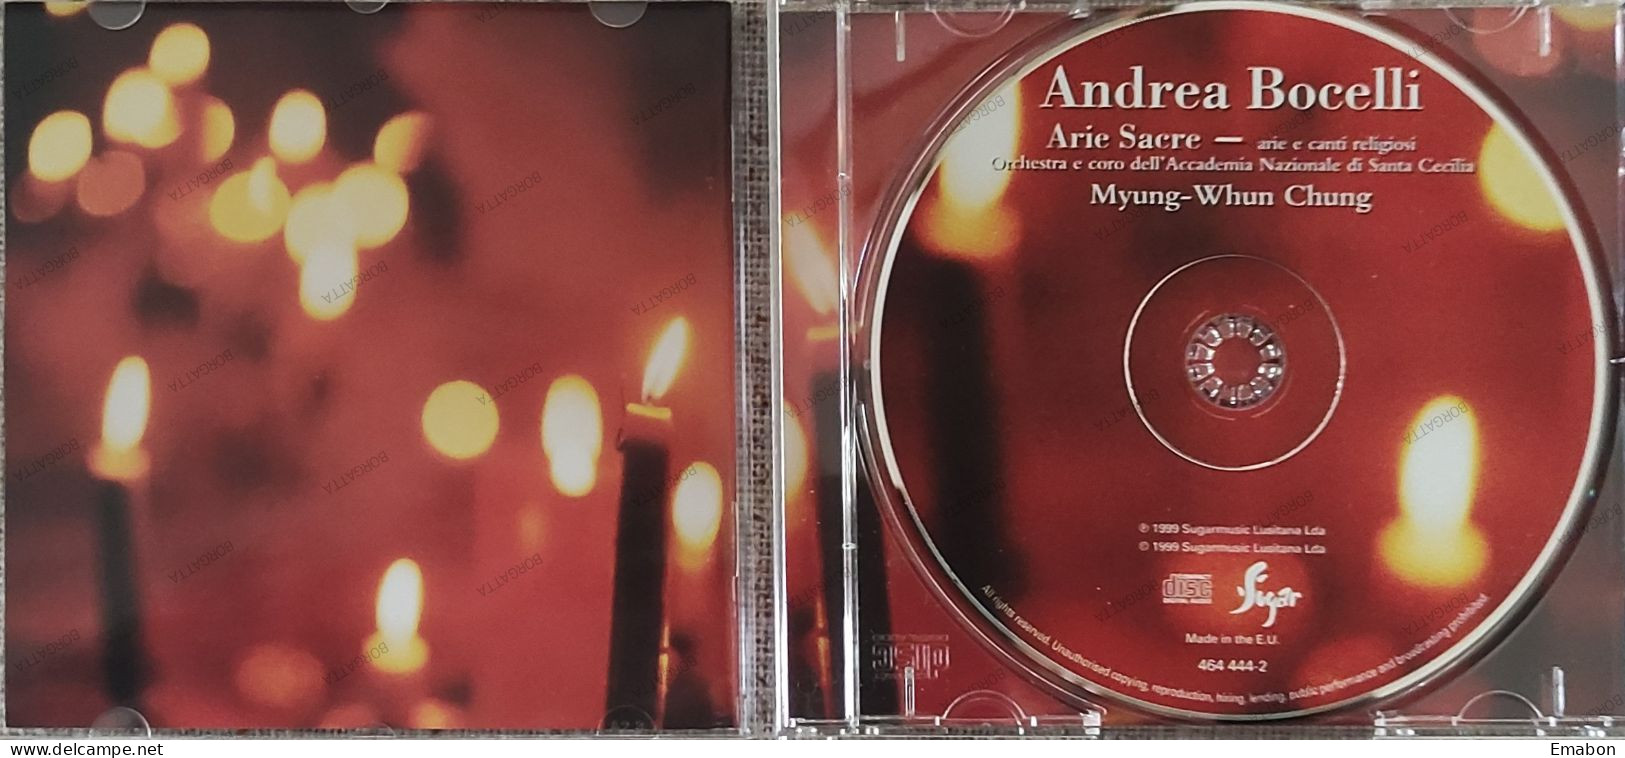 BORGATTA - ITALIANA Cd  ANDREA BOCELLI - ARIE SACRE - SUGARMUSIC 1999 -  USATO In Buono Stato - Other - Italian Music